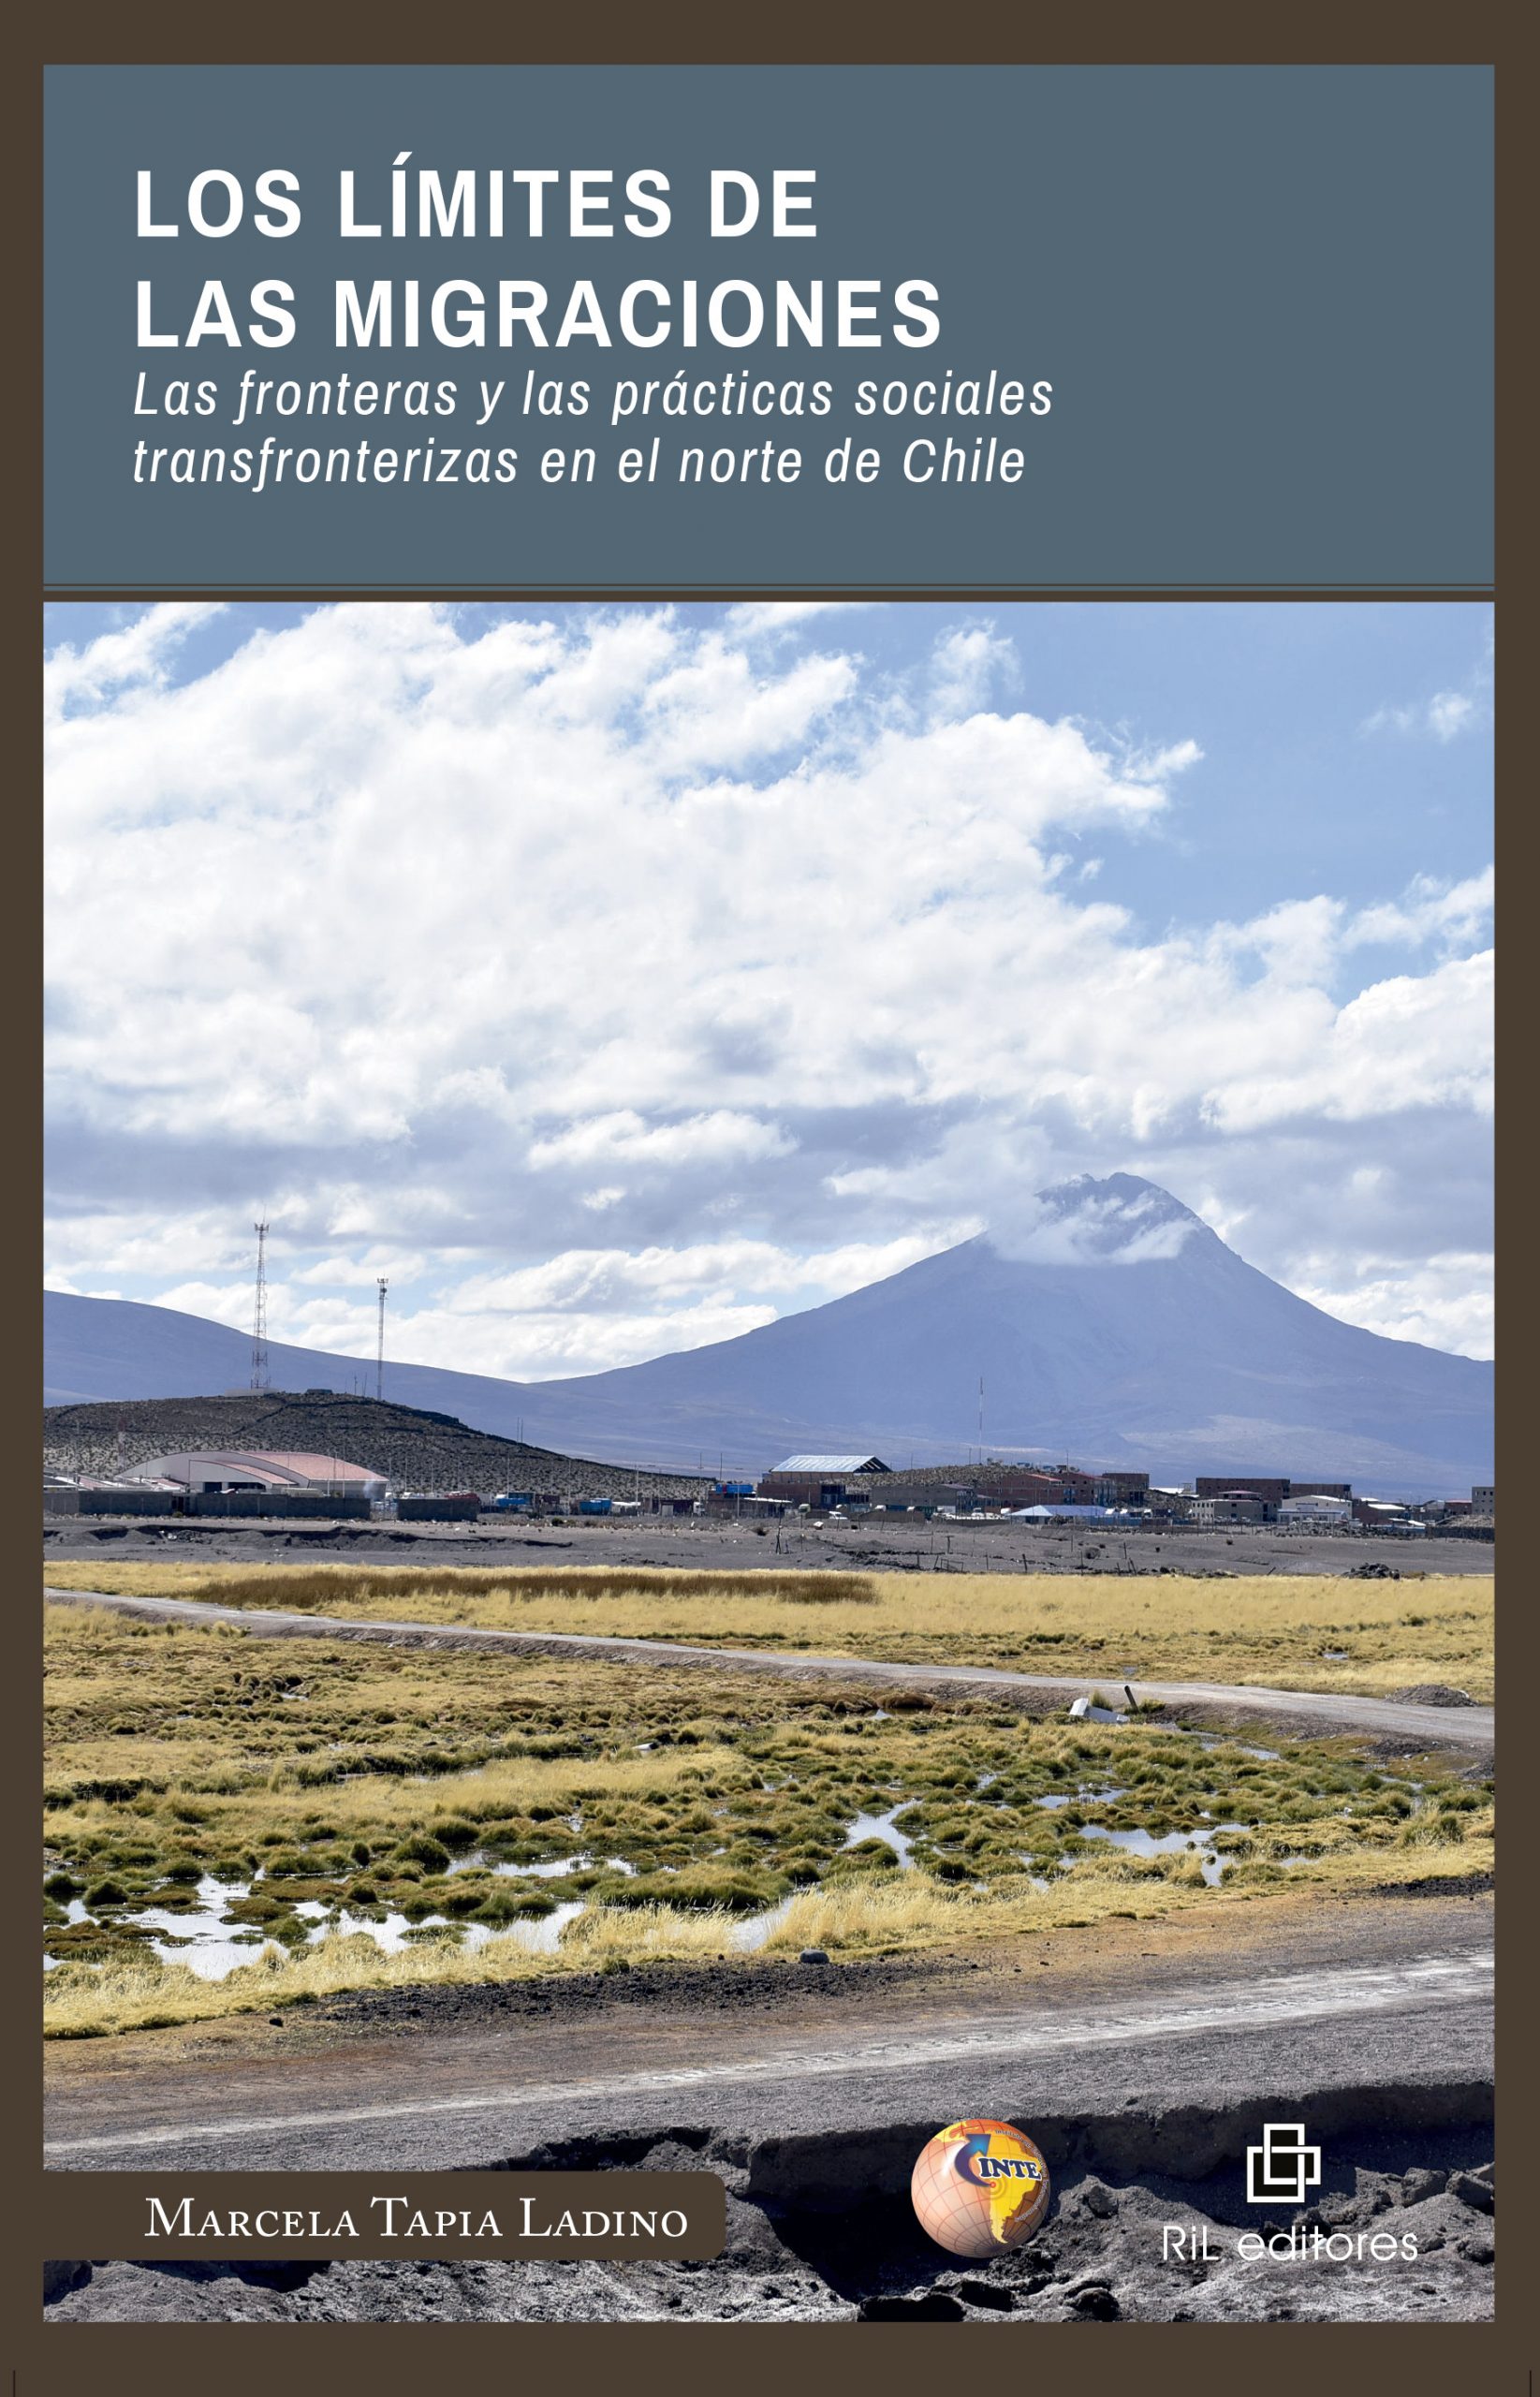 Los límites de las migraciones. Las fronteras y las prácticas sociales transfronterizas en el norte de Chile 1